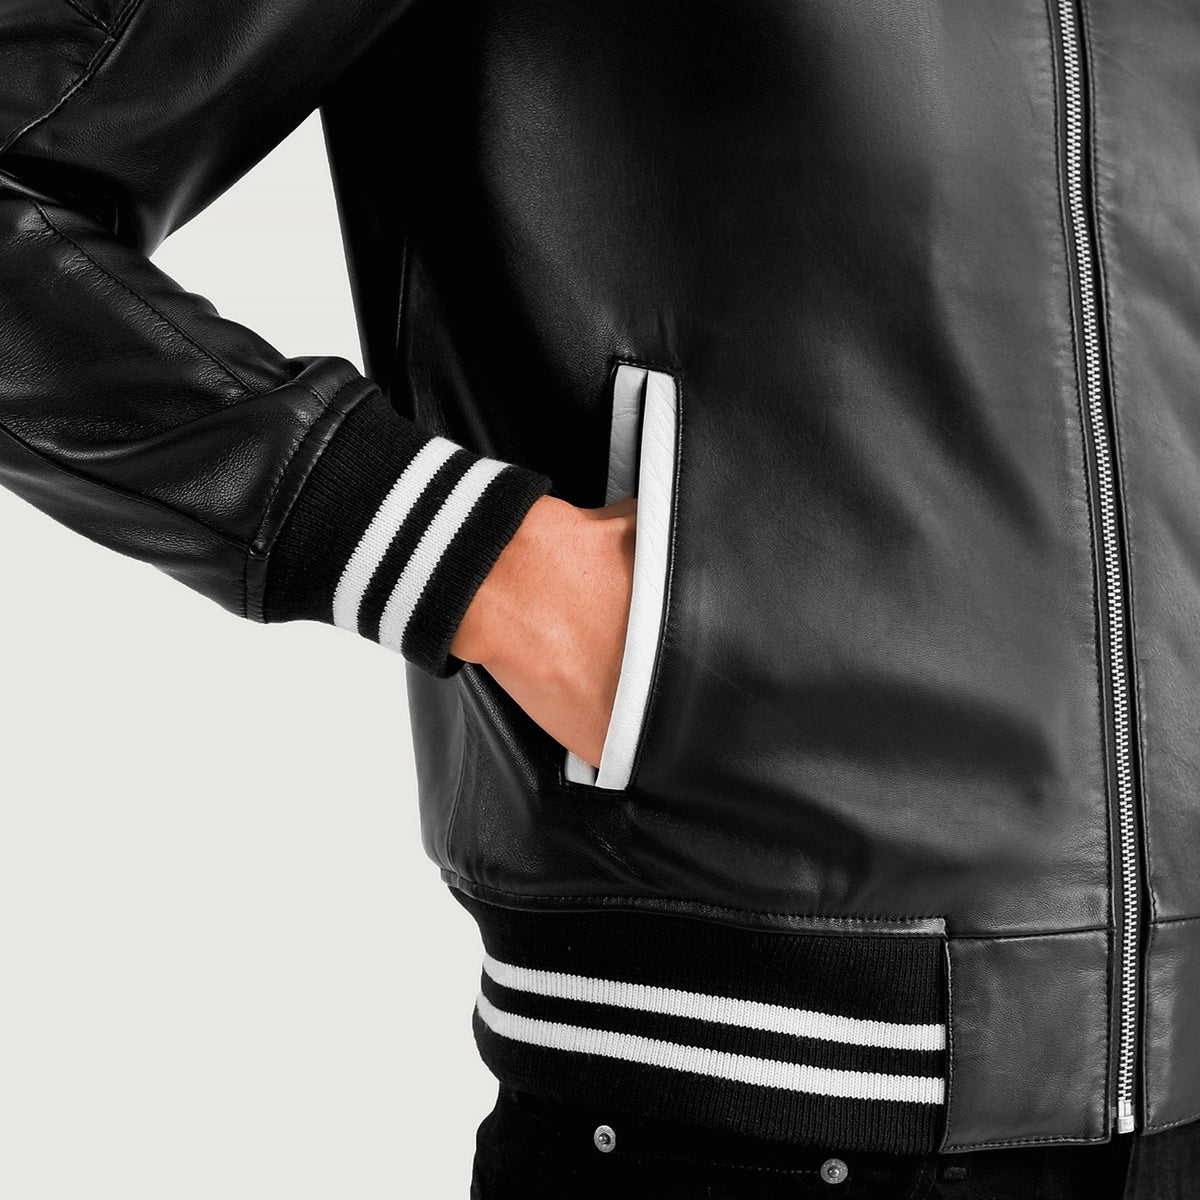 Pascal Black Leather Varsity Jacket